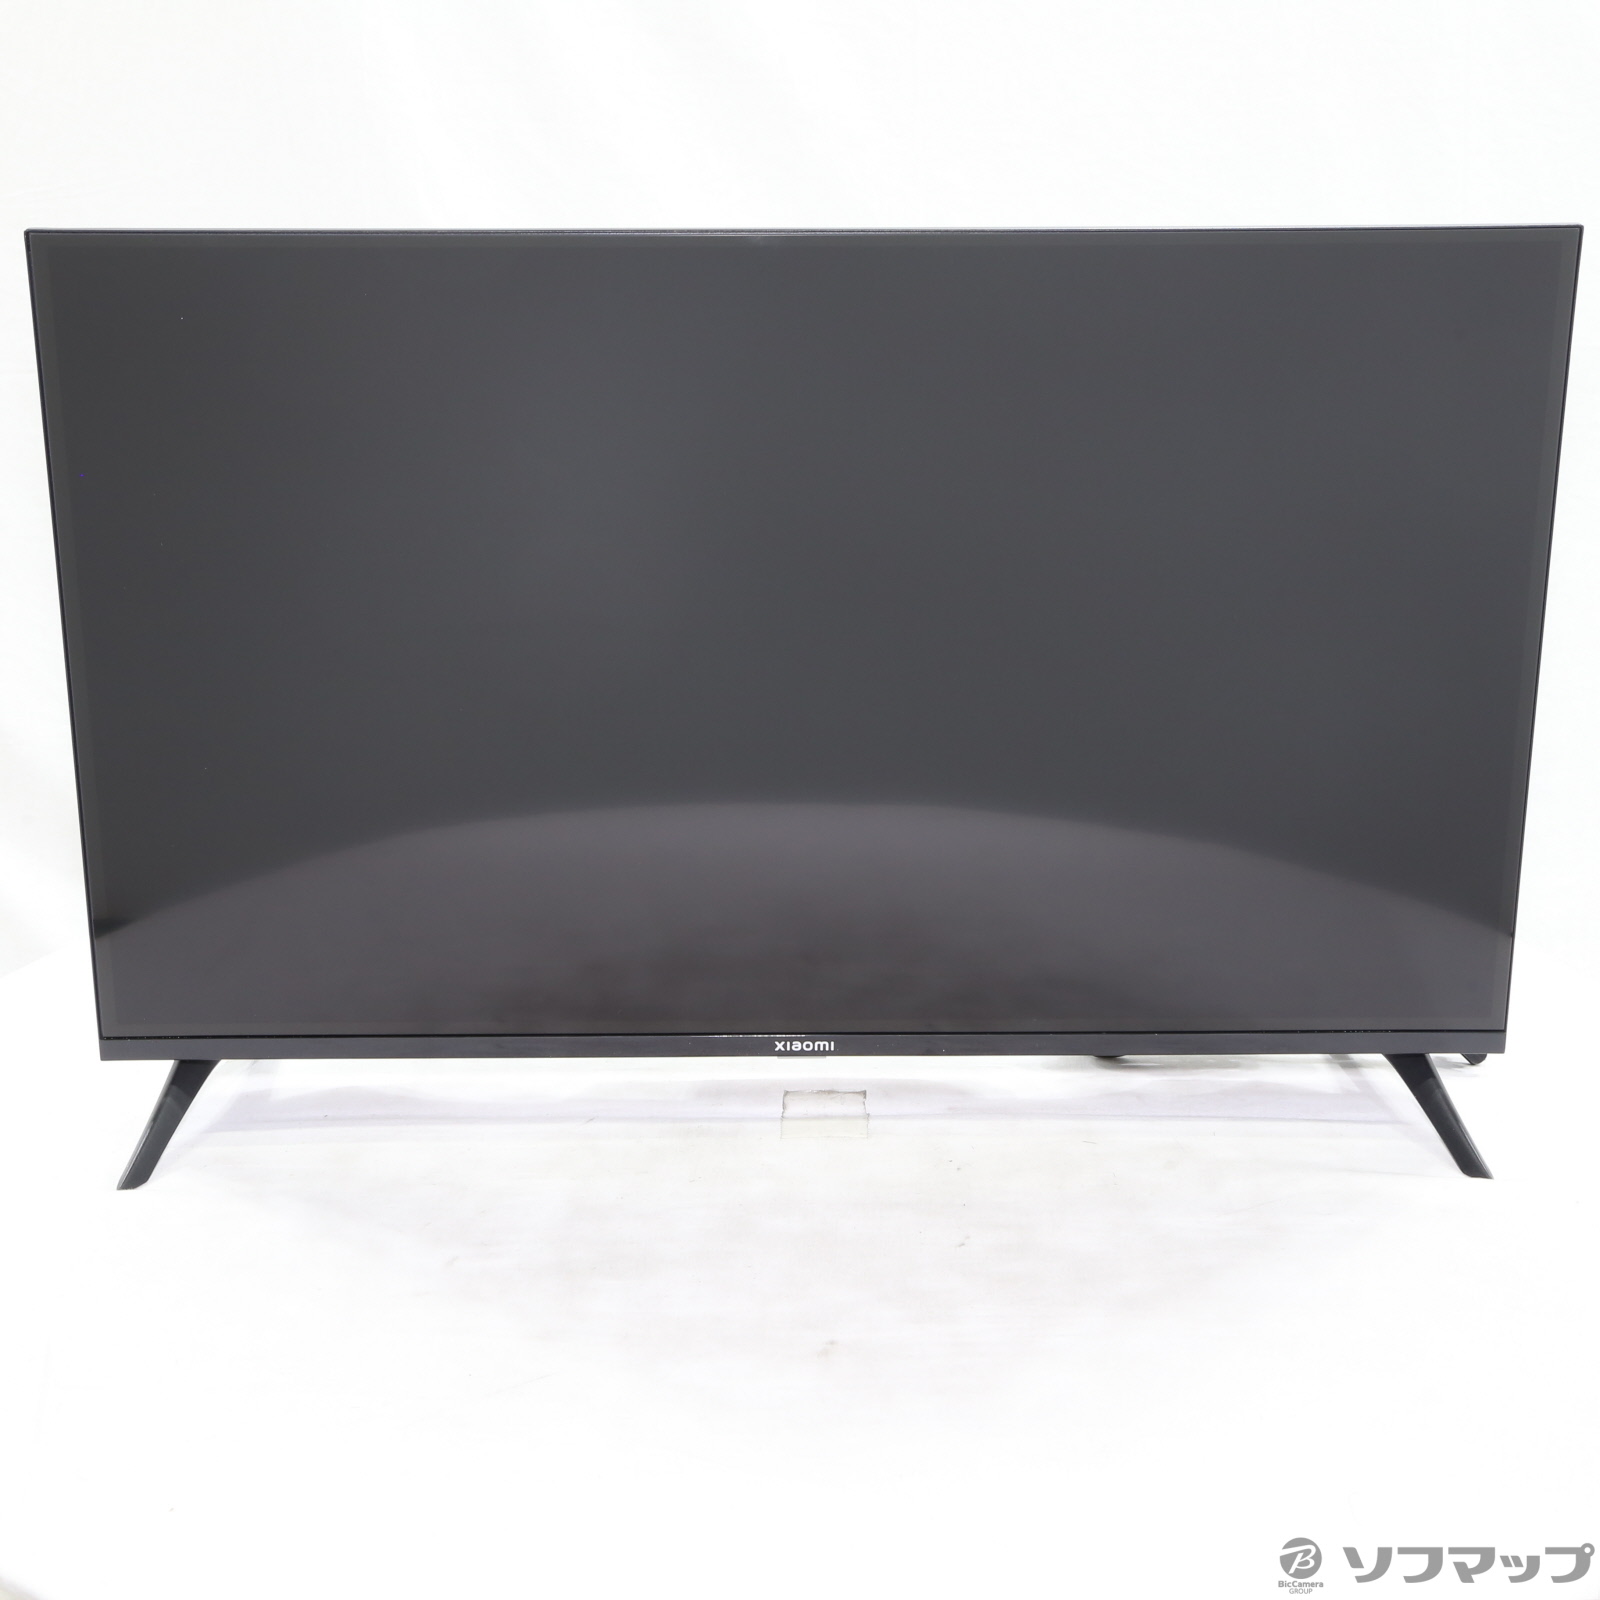 新品未開封ですXiaomi TV A Pro ブラック R23Z011A 32V型